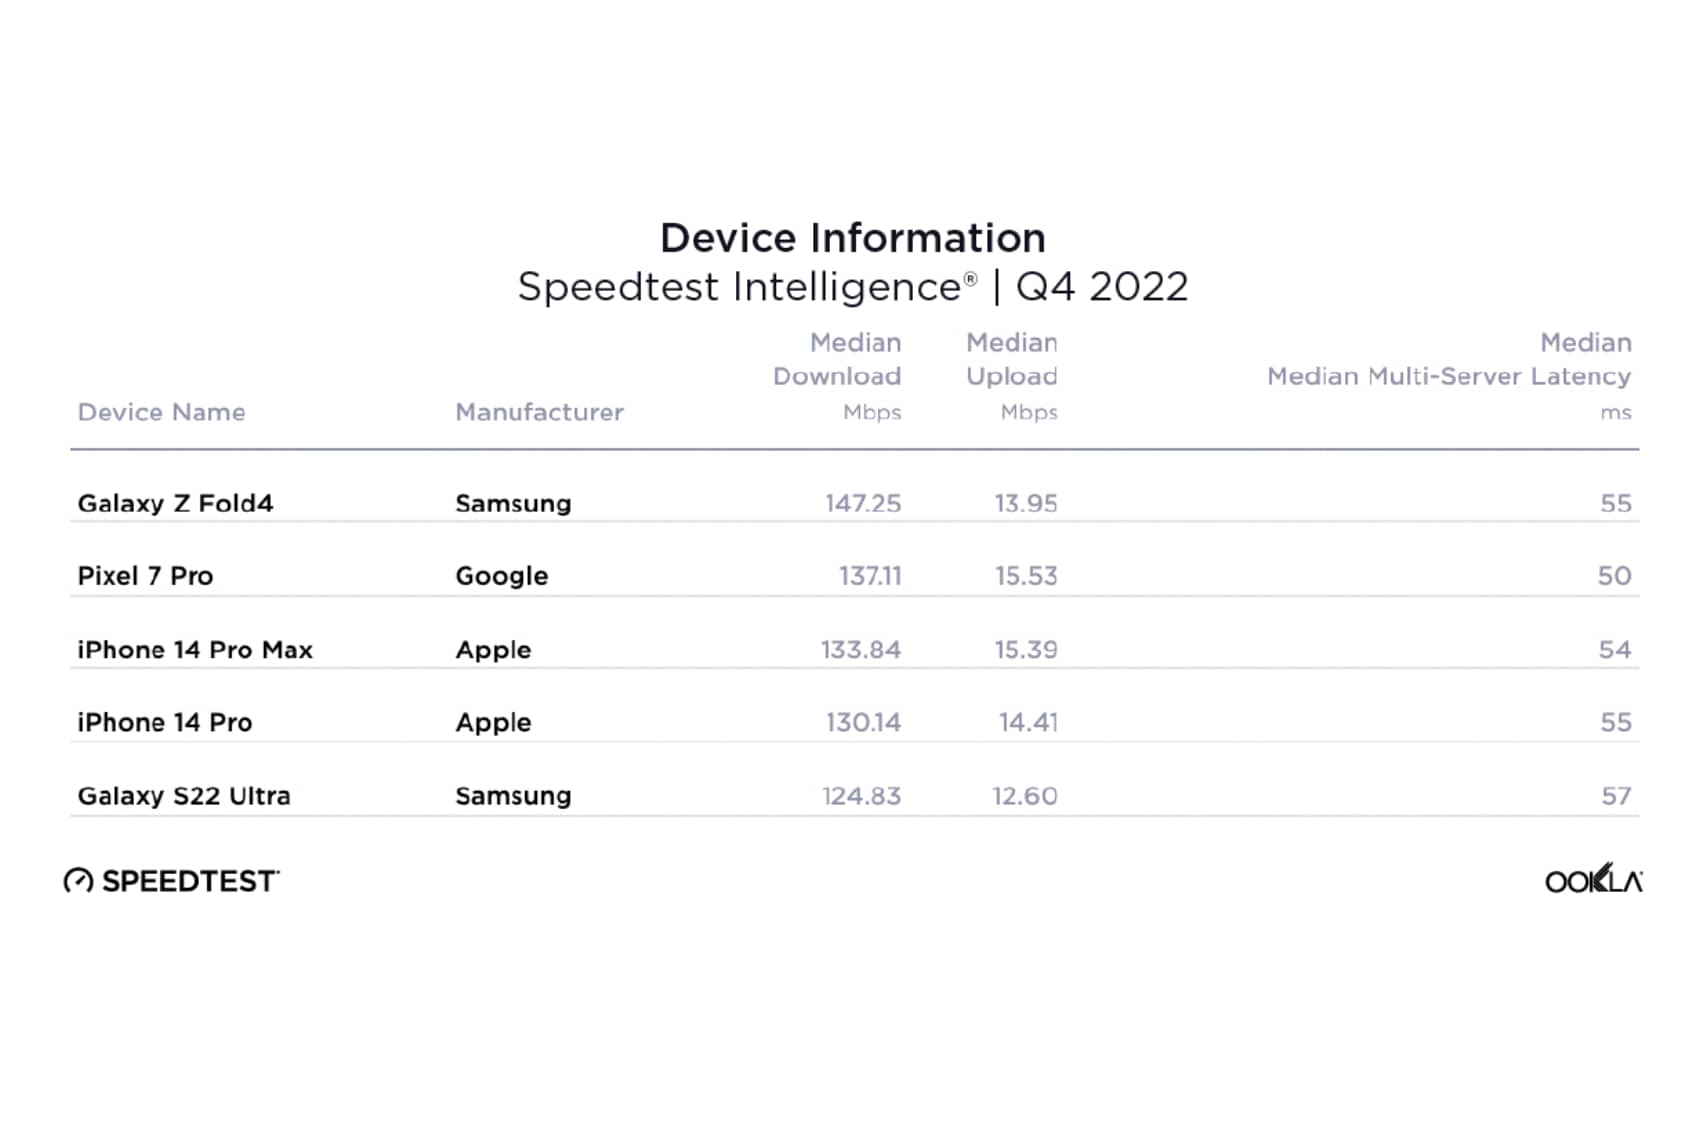 Gráfico de Ookla Speedtest de los teléfonos inteligentes más rápidos en el cuarto trimestre de 2022.